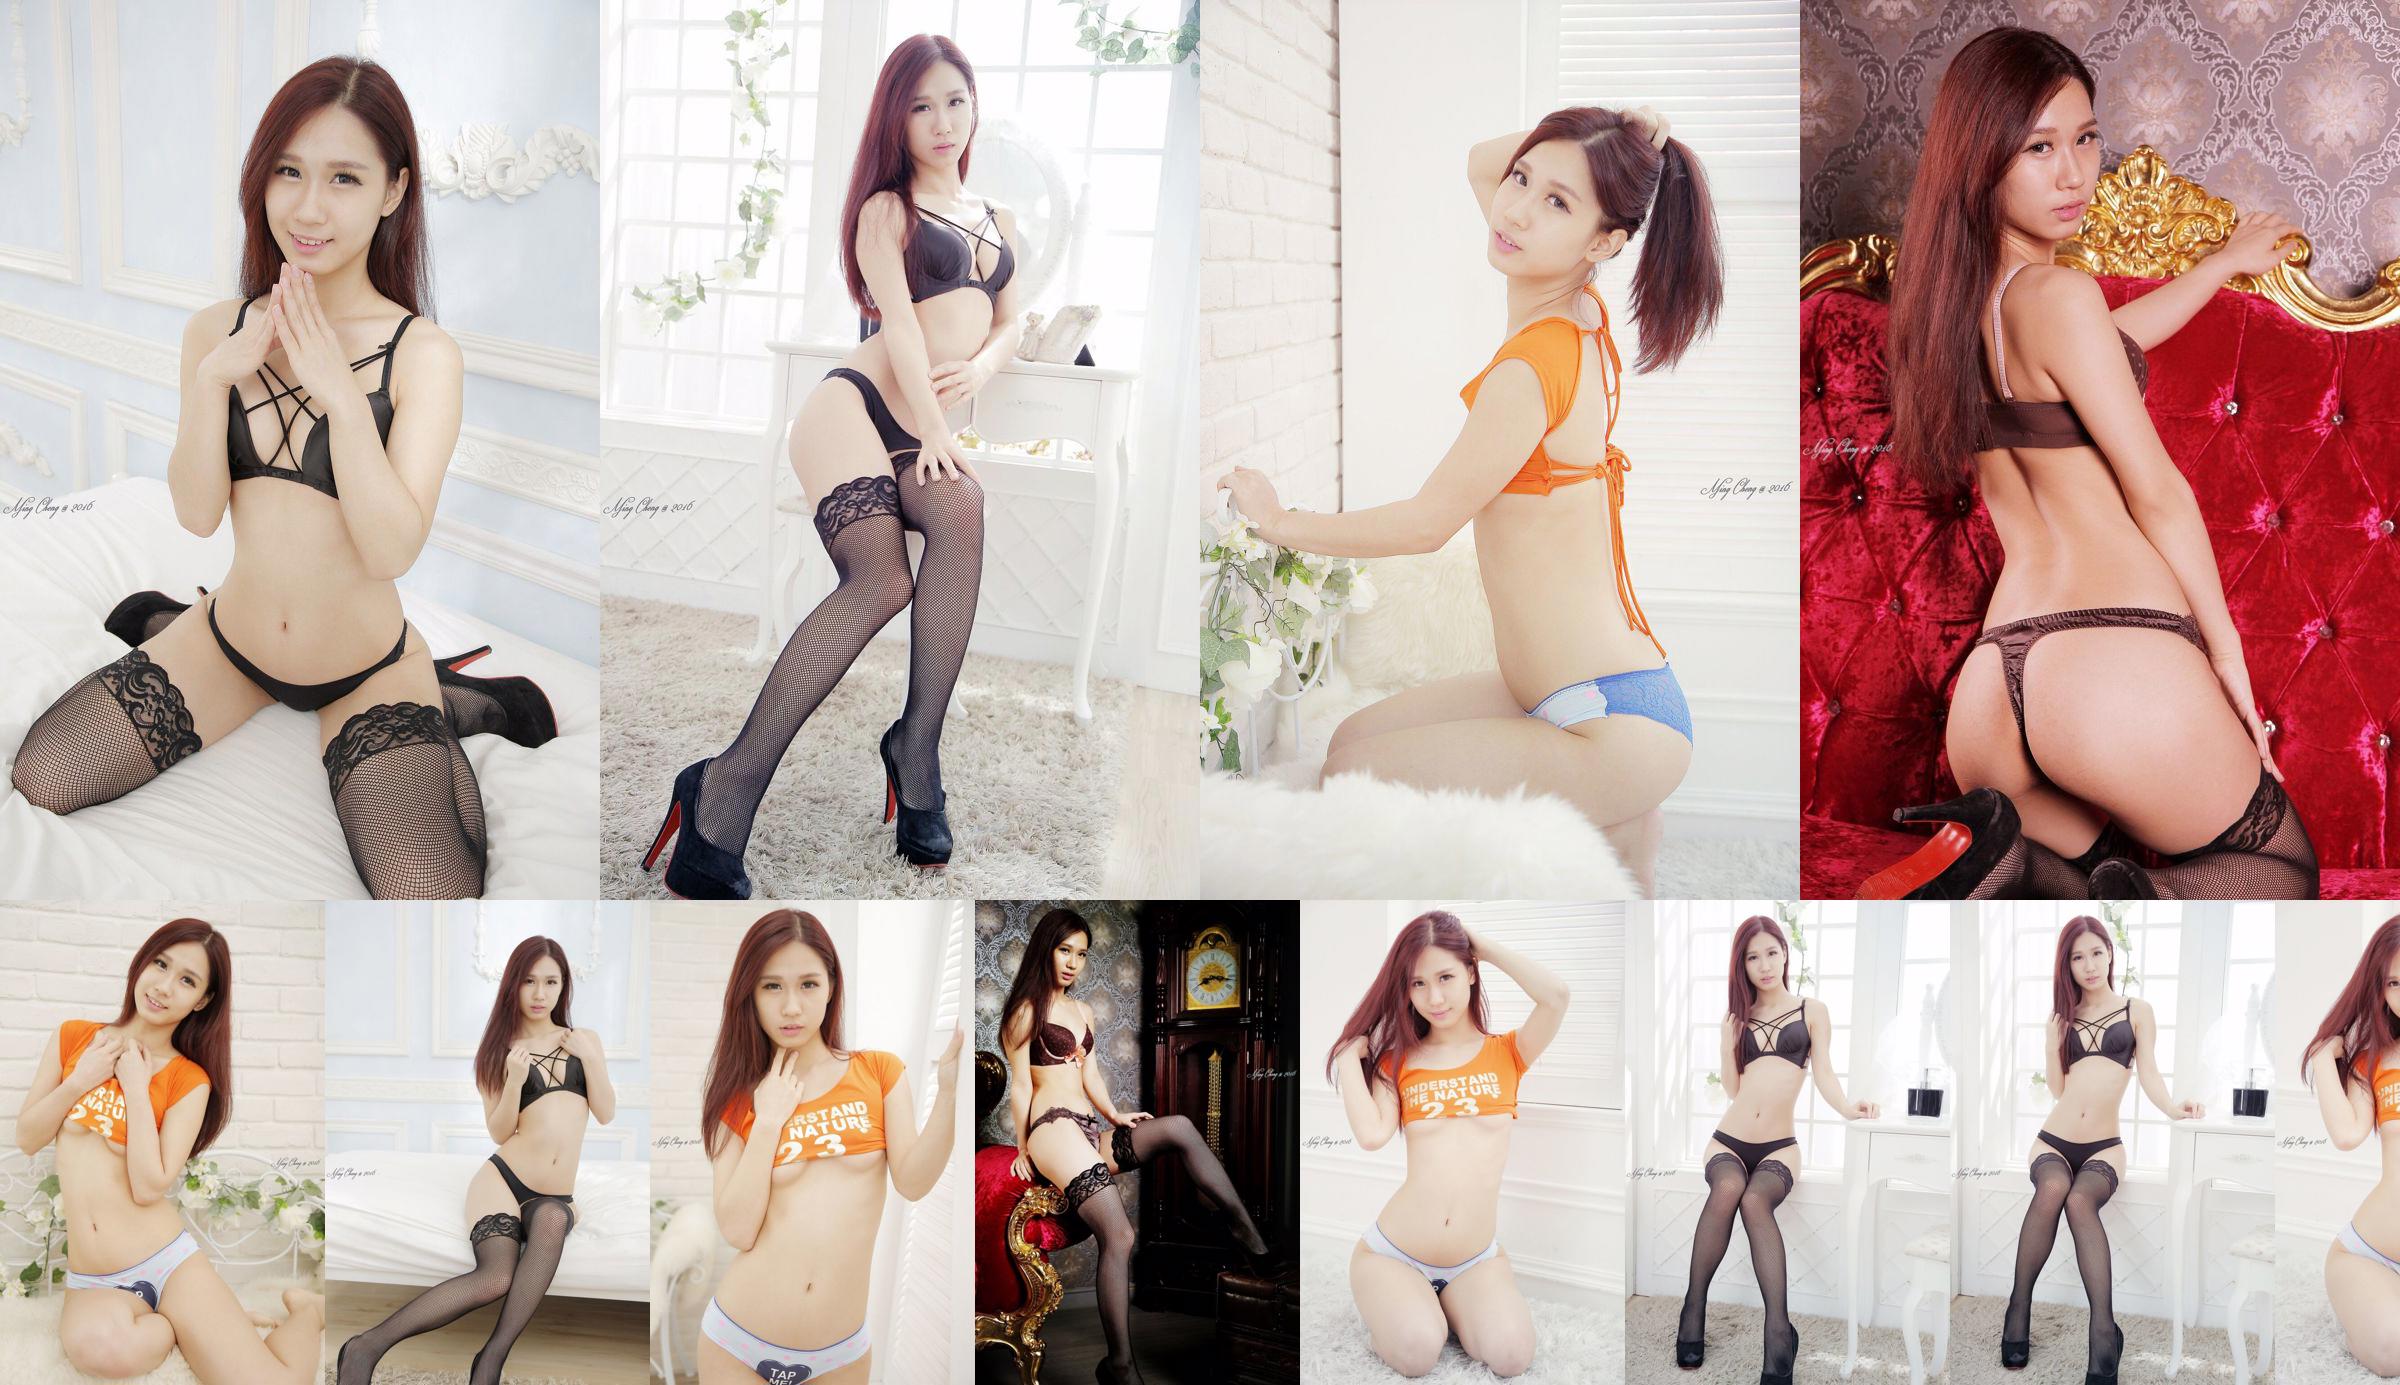 [Taiwan Zhengmei] Belle underwear studio shooting No.e1971d Page 1